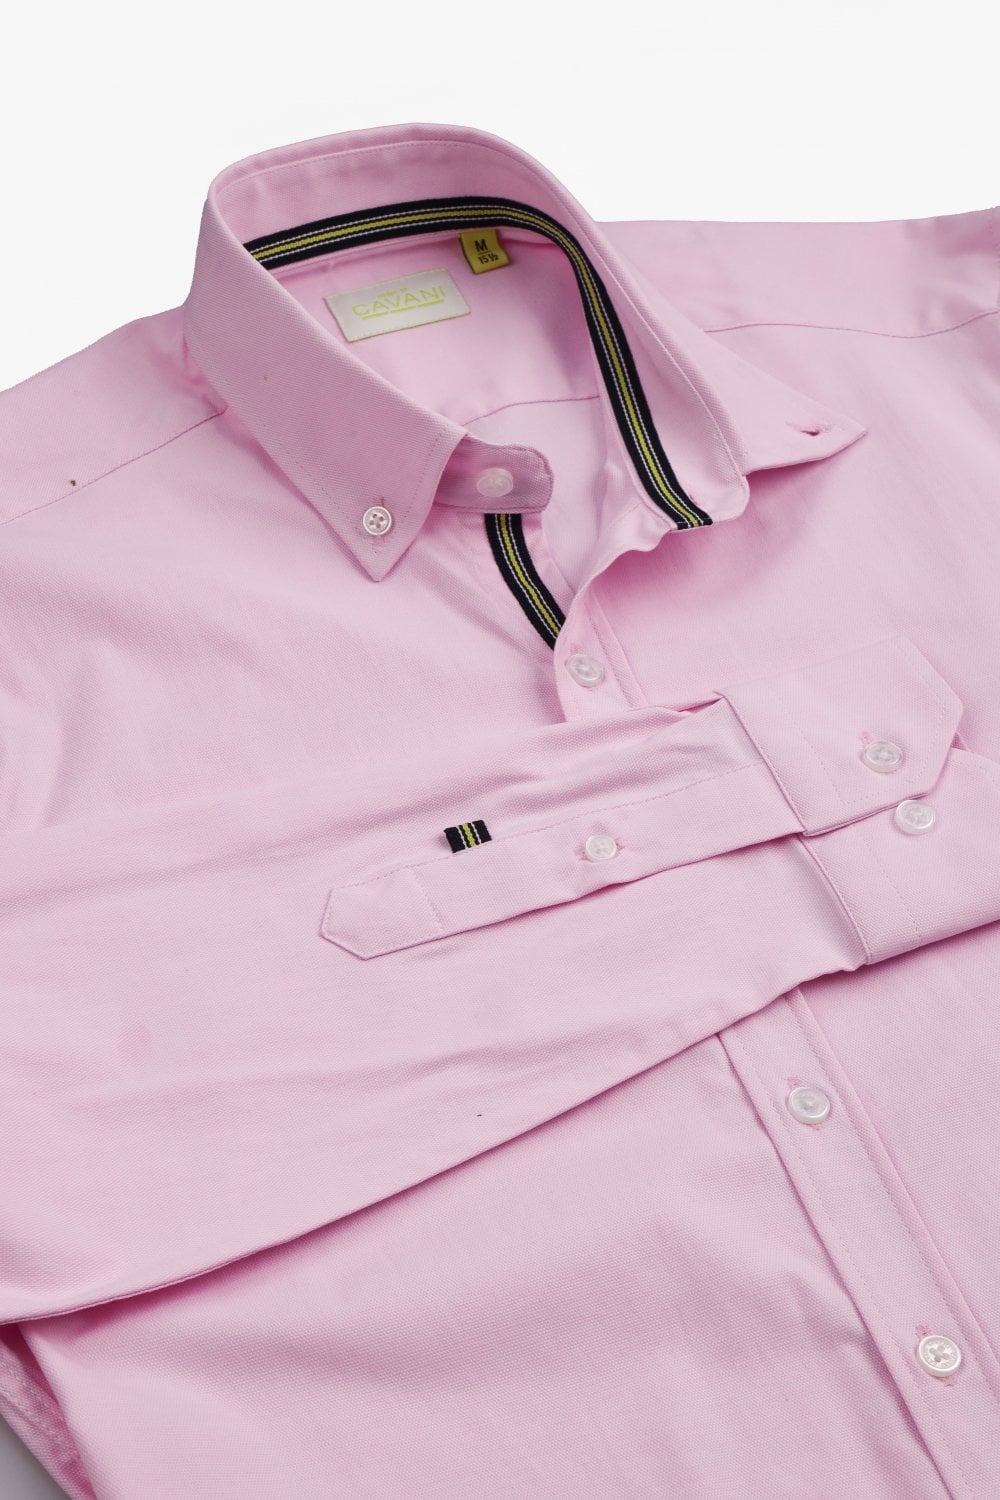 Tessa Pink Cotton Shirt - Shirts - - THREADPEPPER